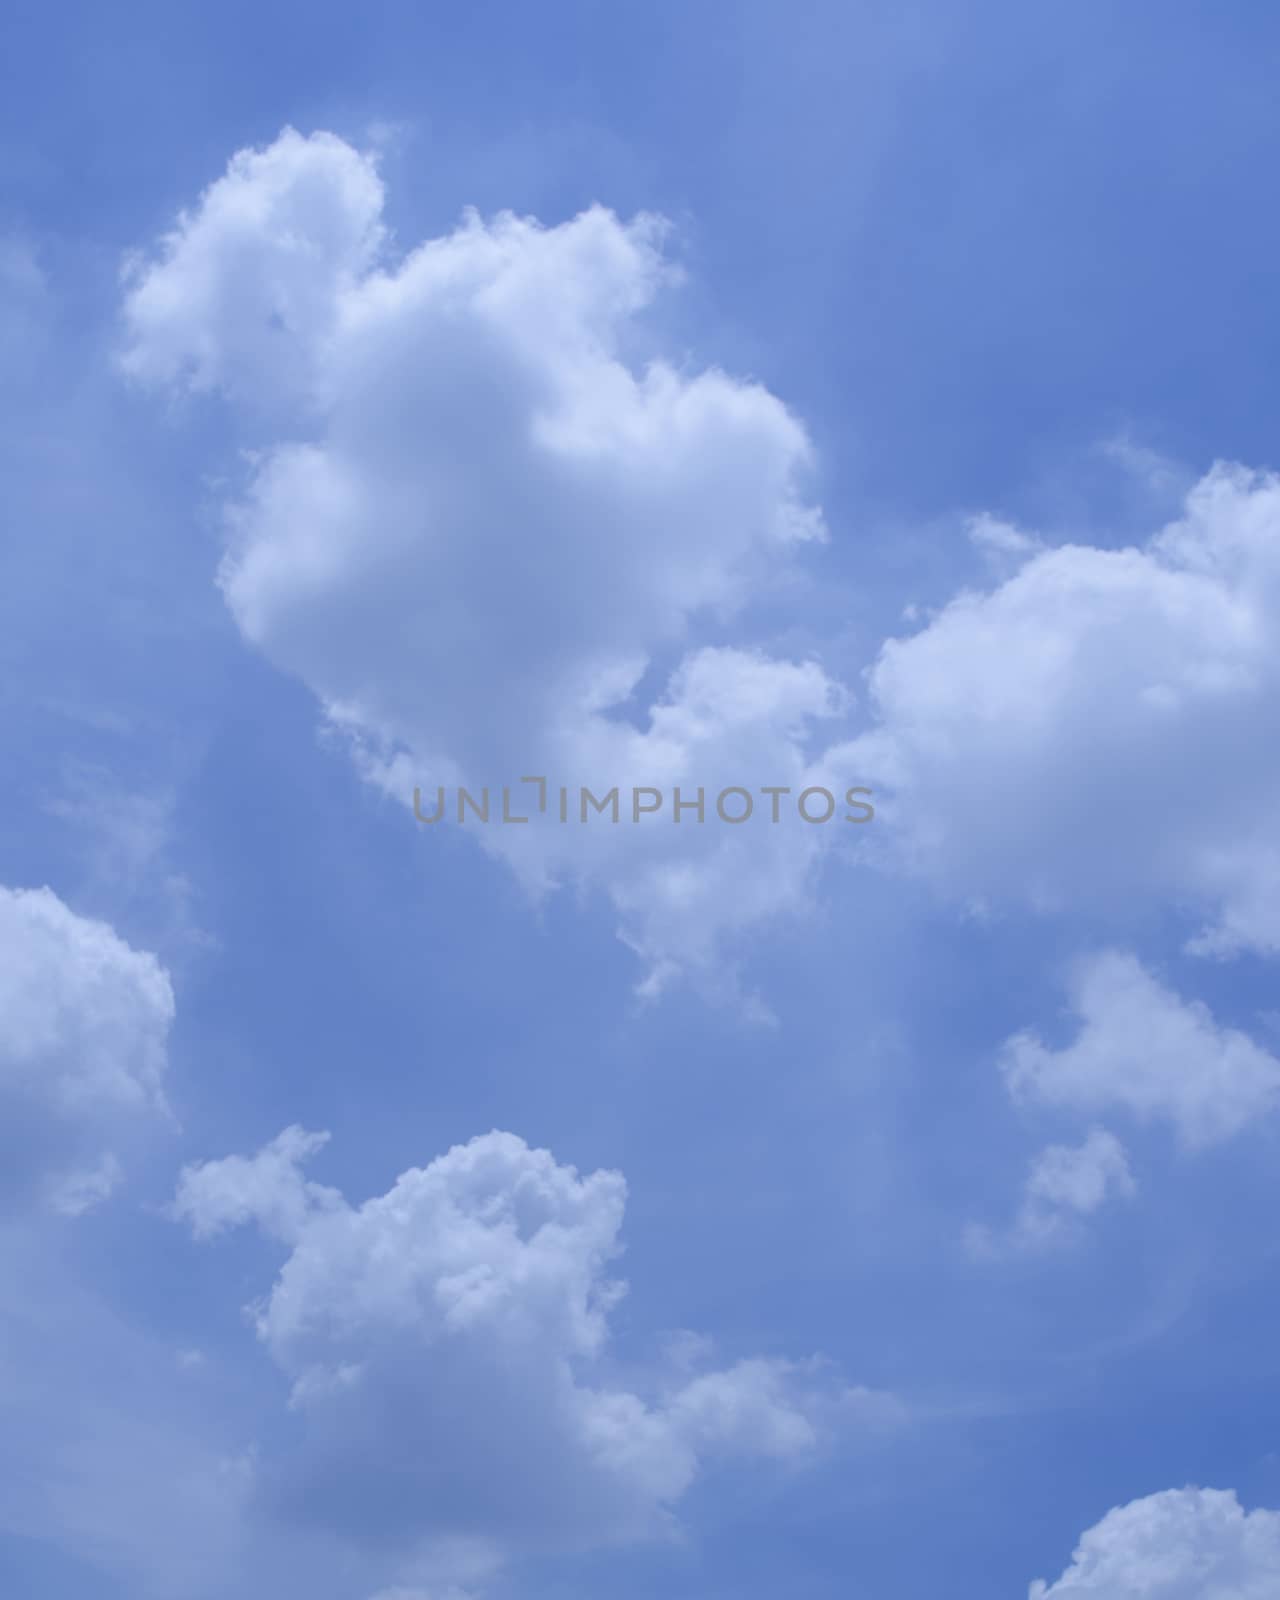 Cloud in Blue Sky by kobfujar